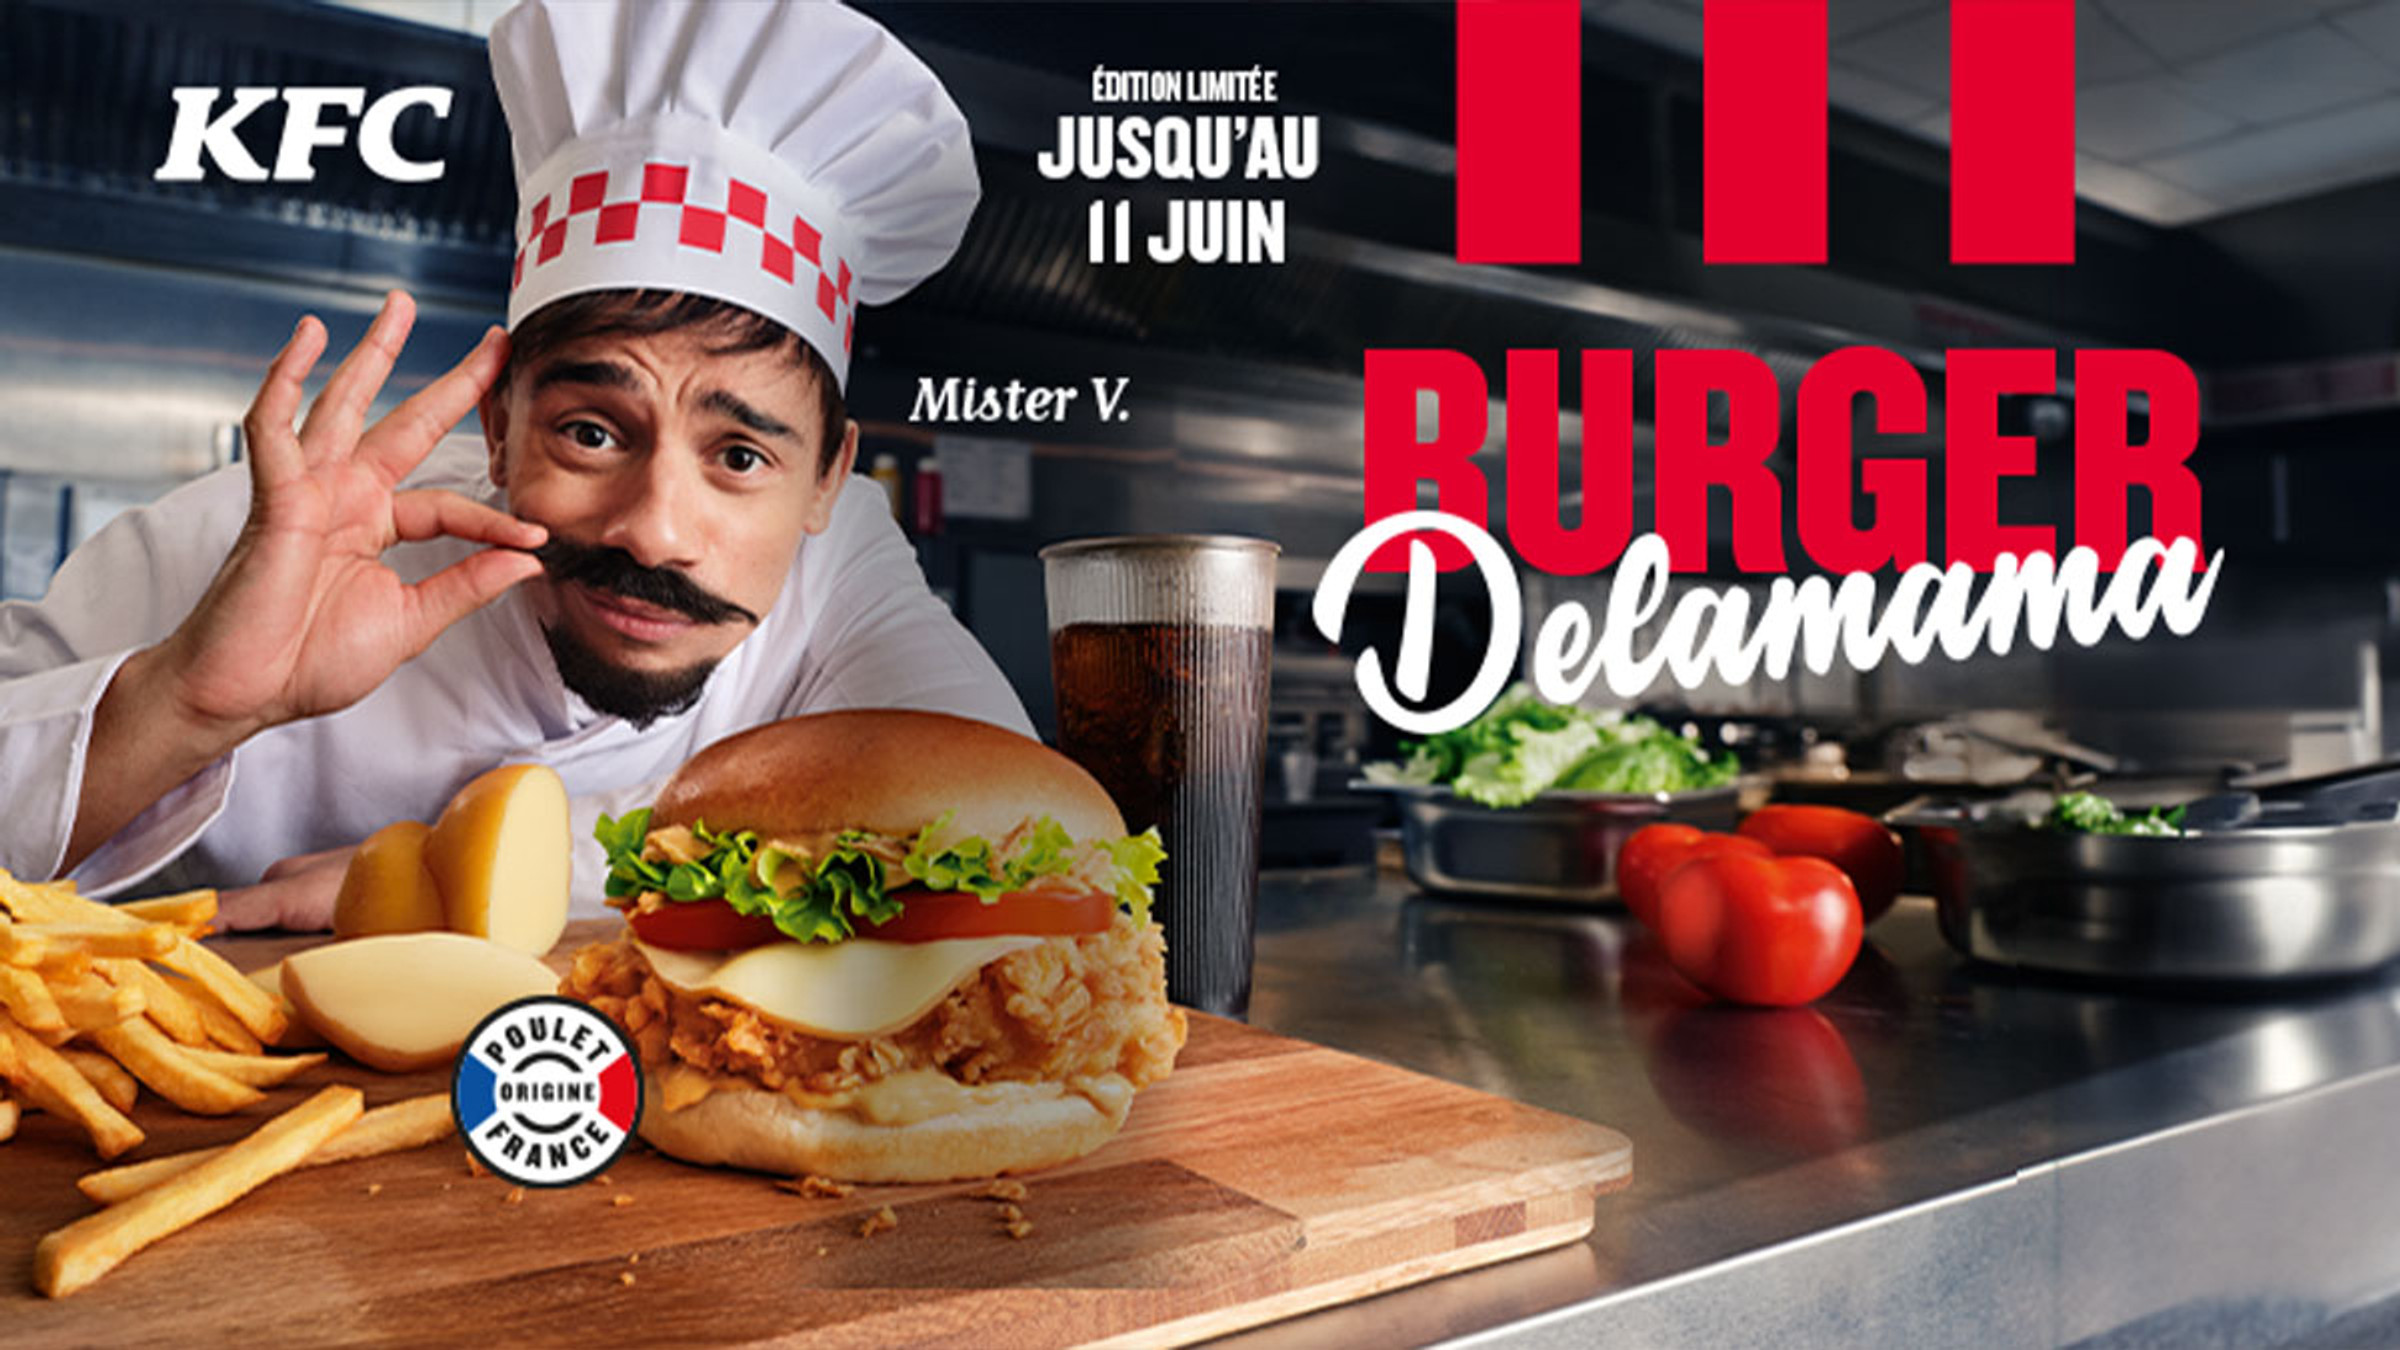 mister-v-burger-delamama-recette-composition-prix-kfc